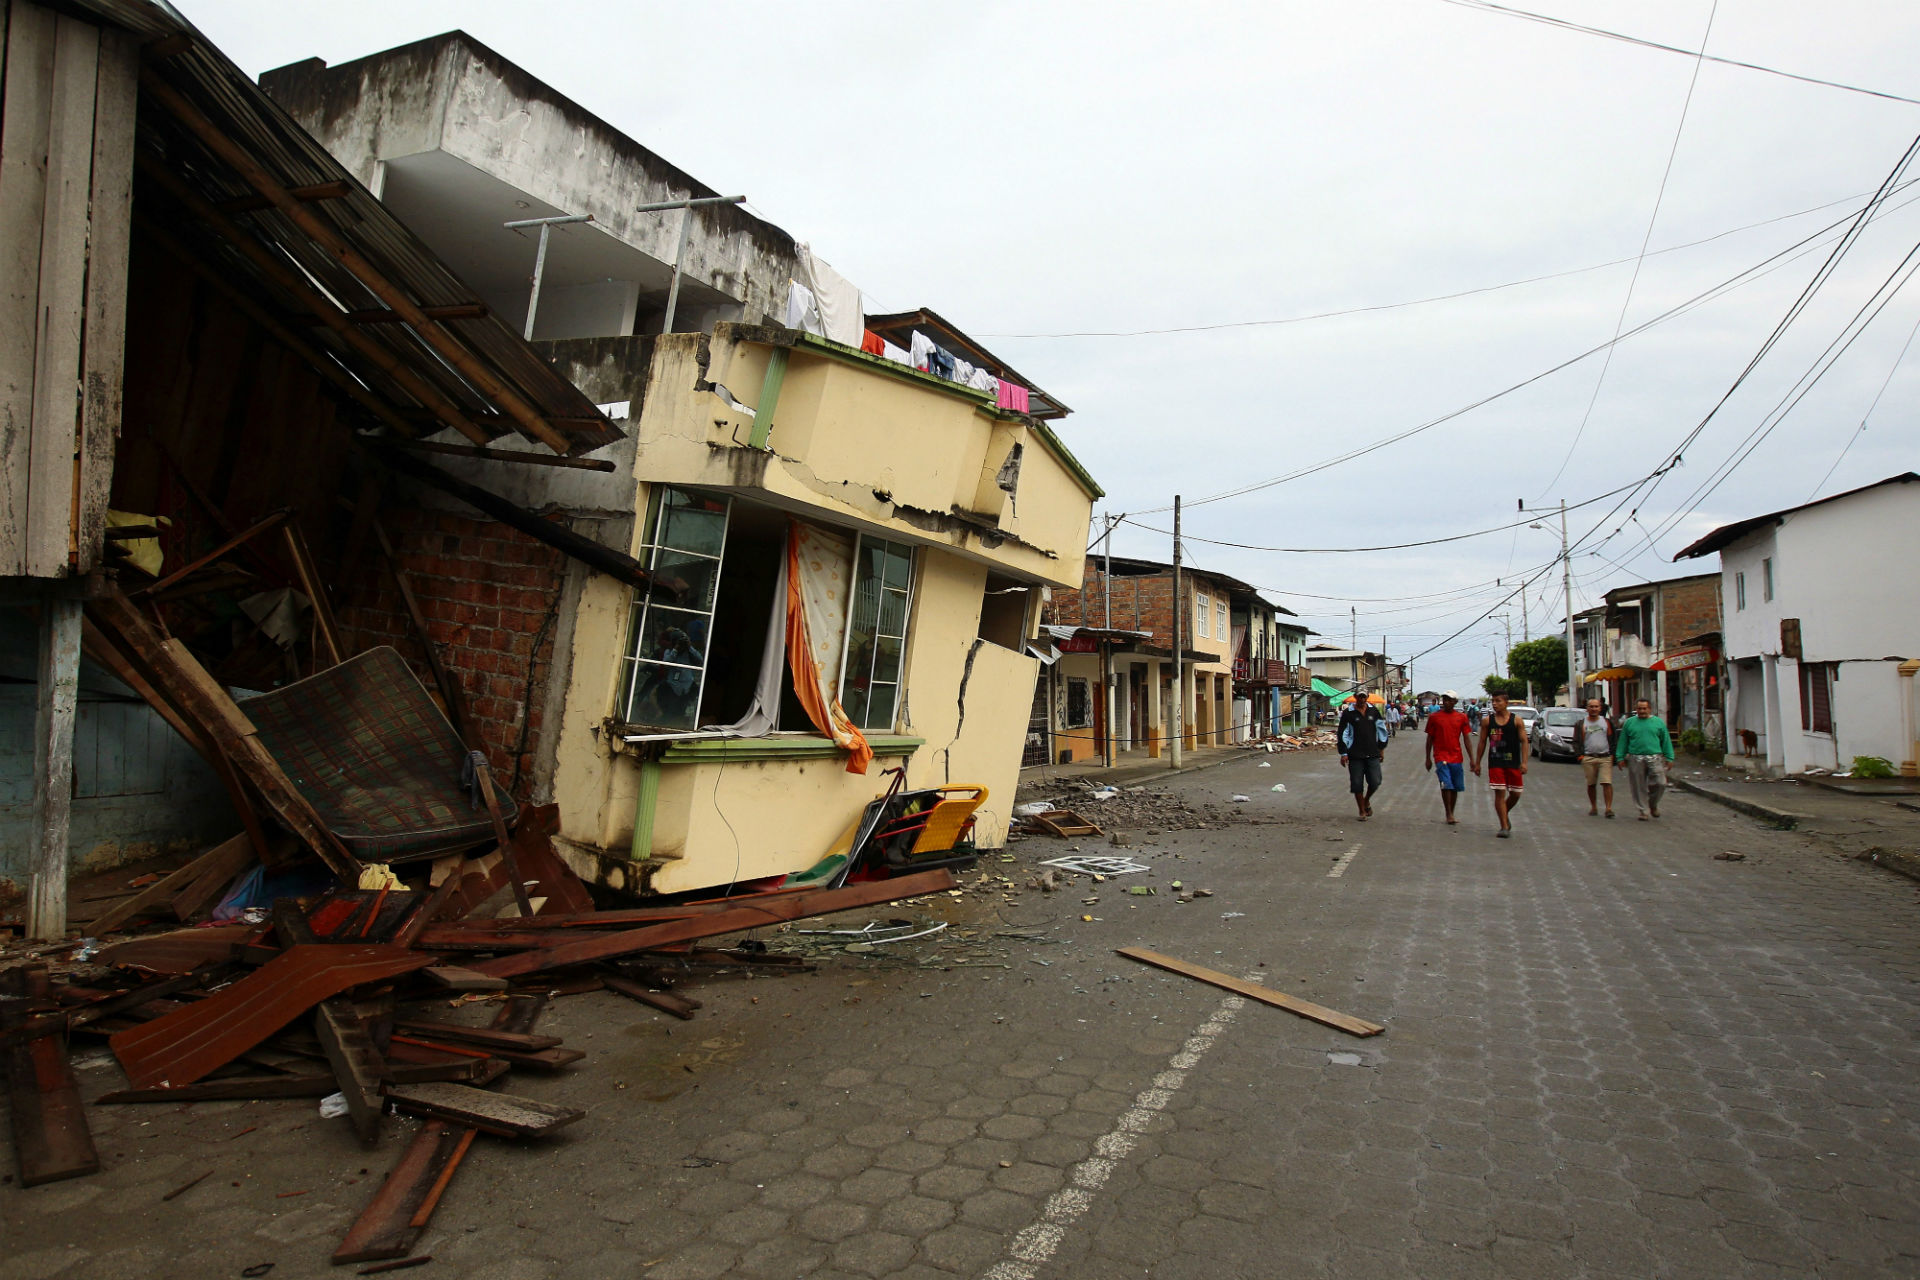  Dos fuertes sismos volvieron a sacudir a Ecuador este domingo; epicentro, el mismo que terremoto de abril